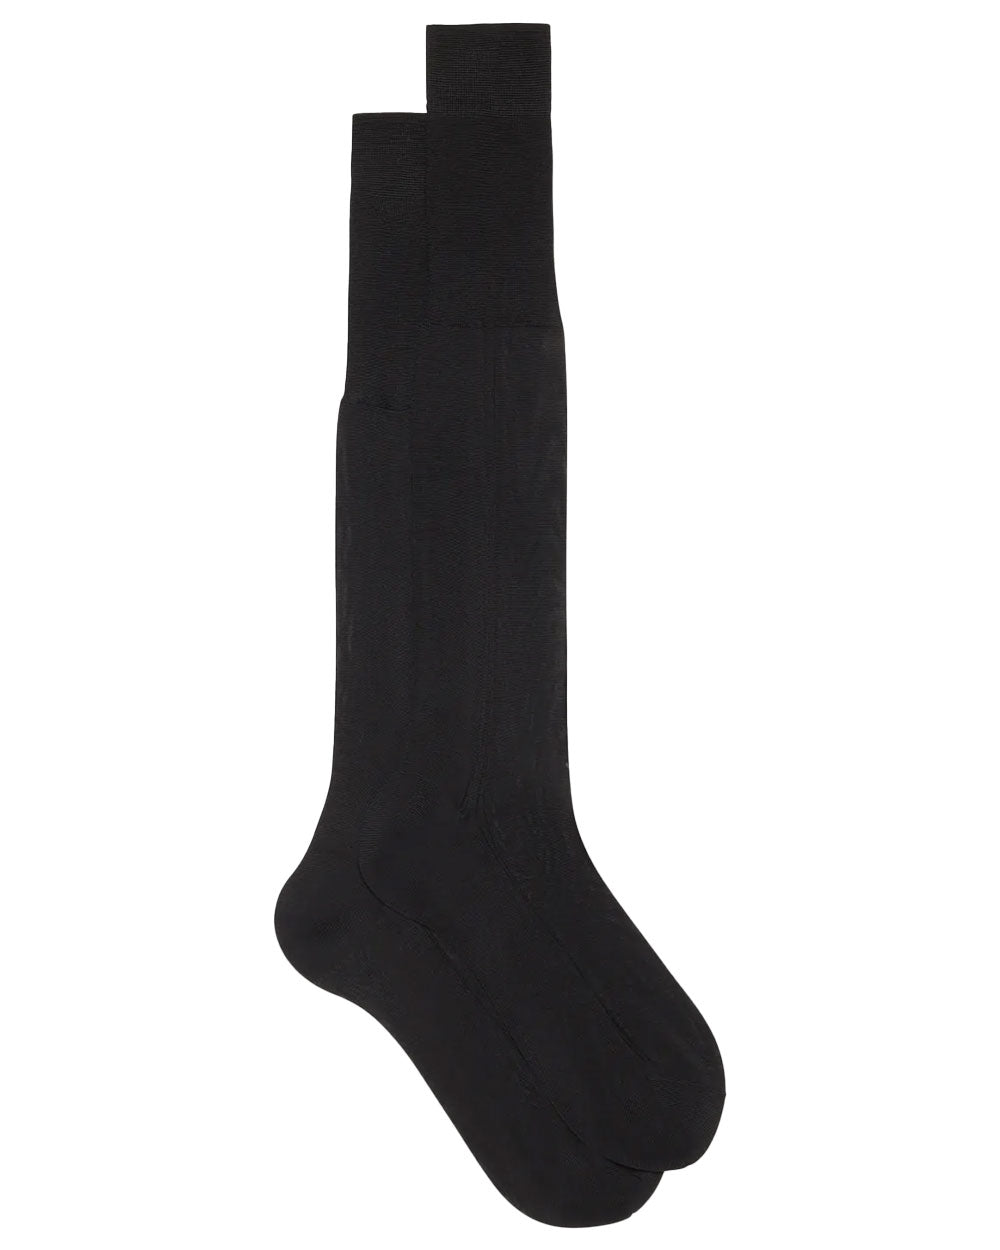 Silk Over the Calf Socks in Black